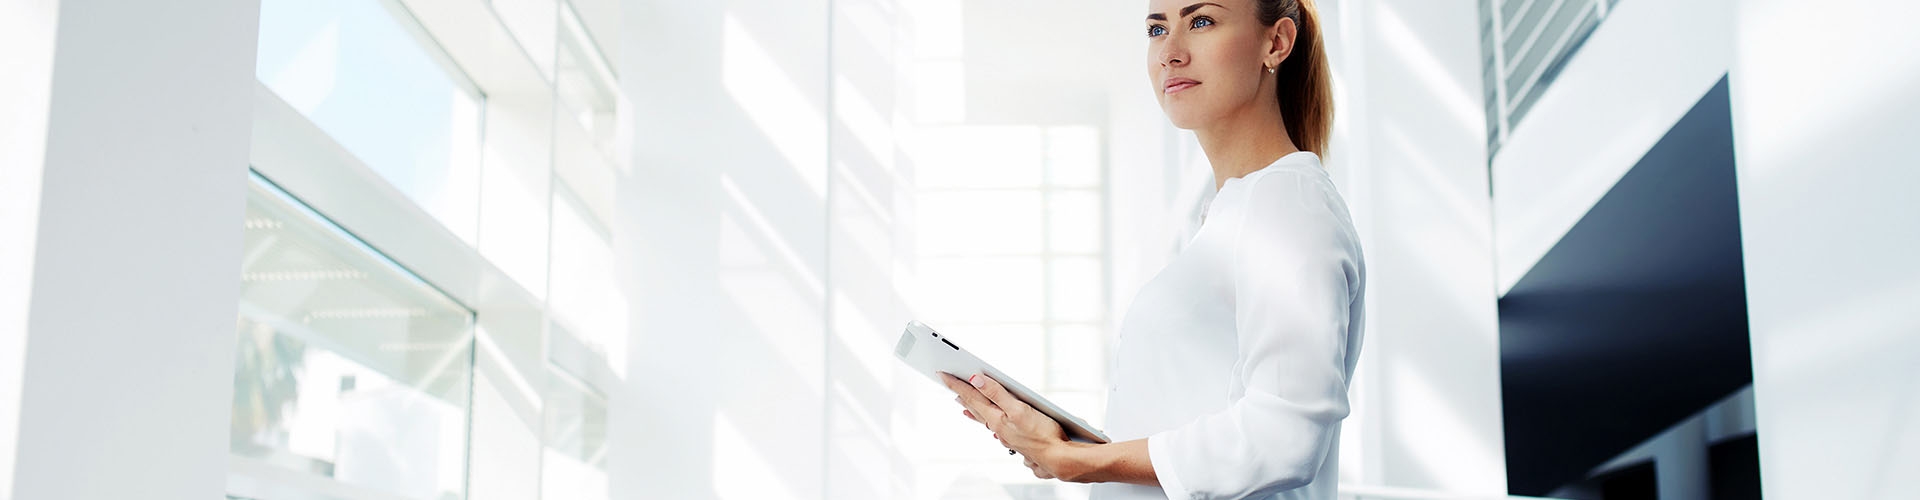  Eurocobro - Chica empresaria vestida con camisa blanca sujetando una tablet mirando al horizonte